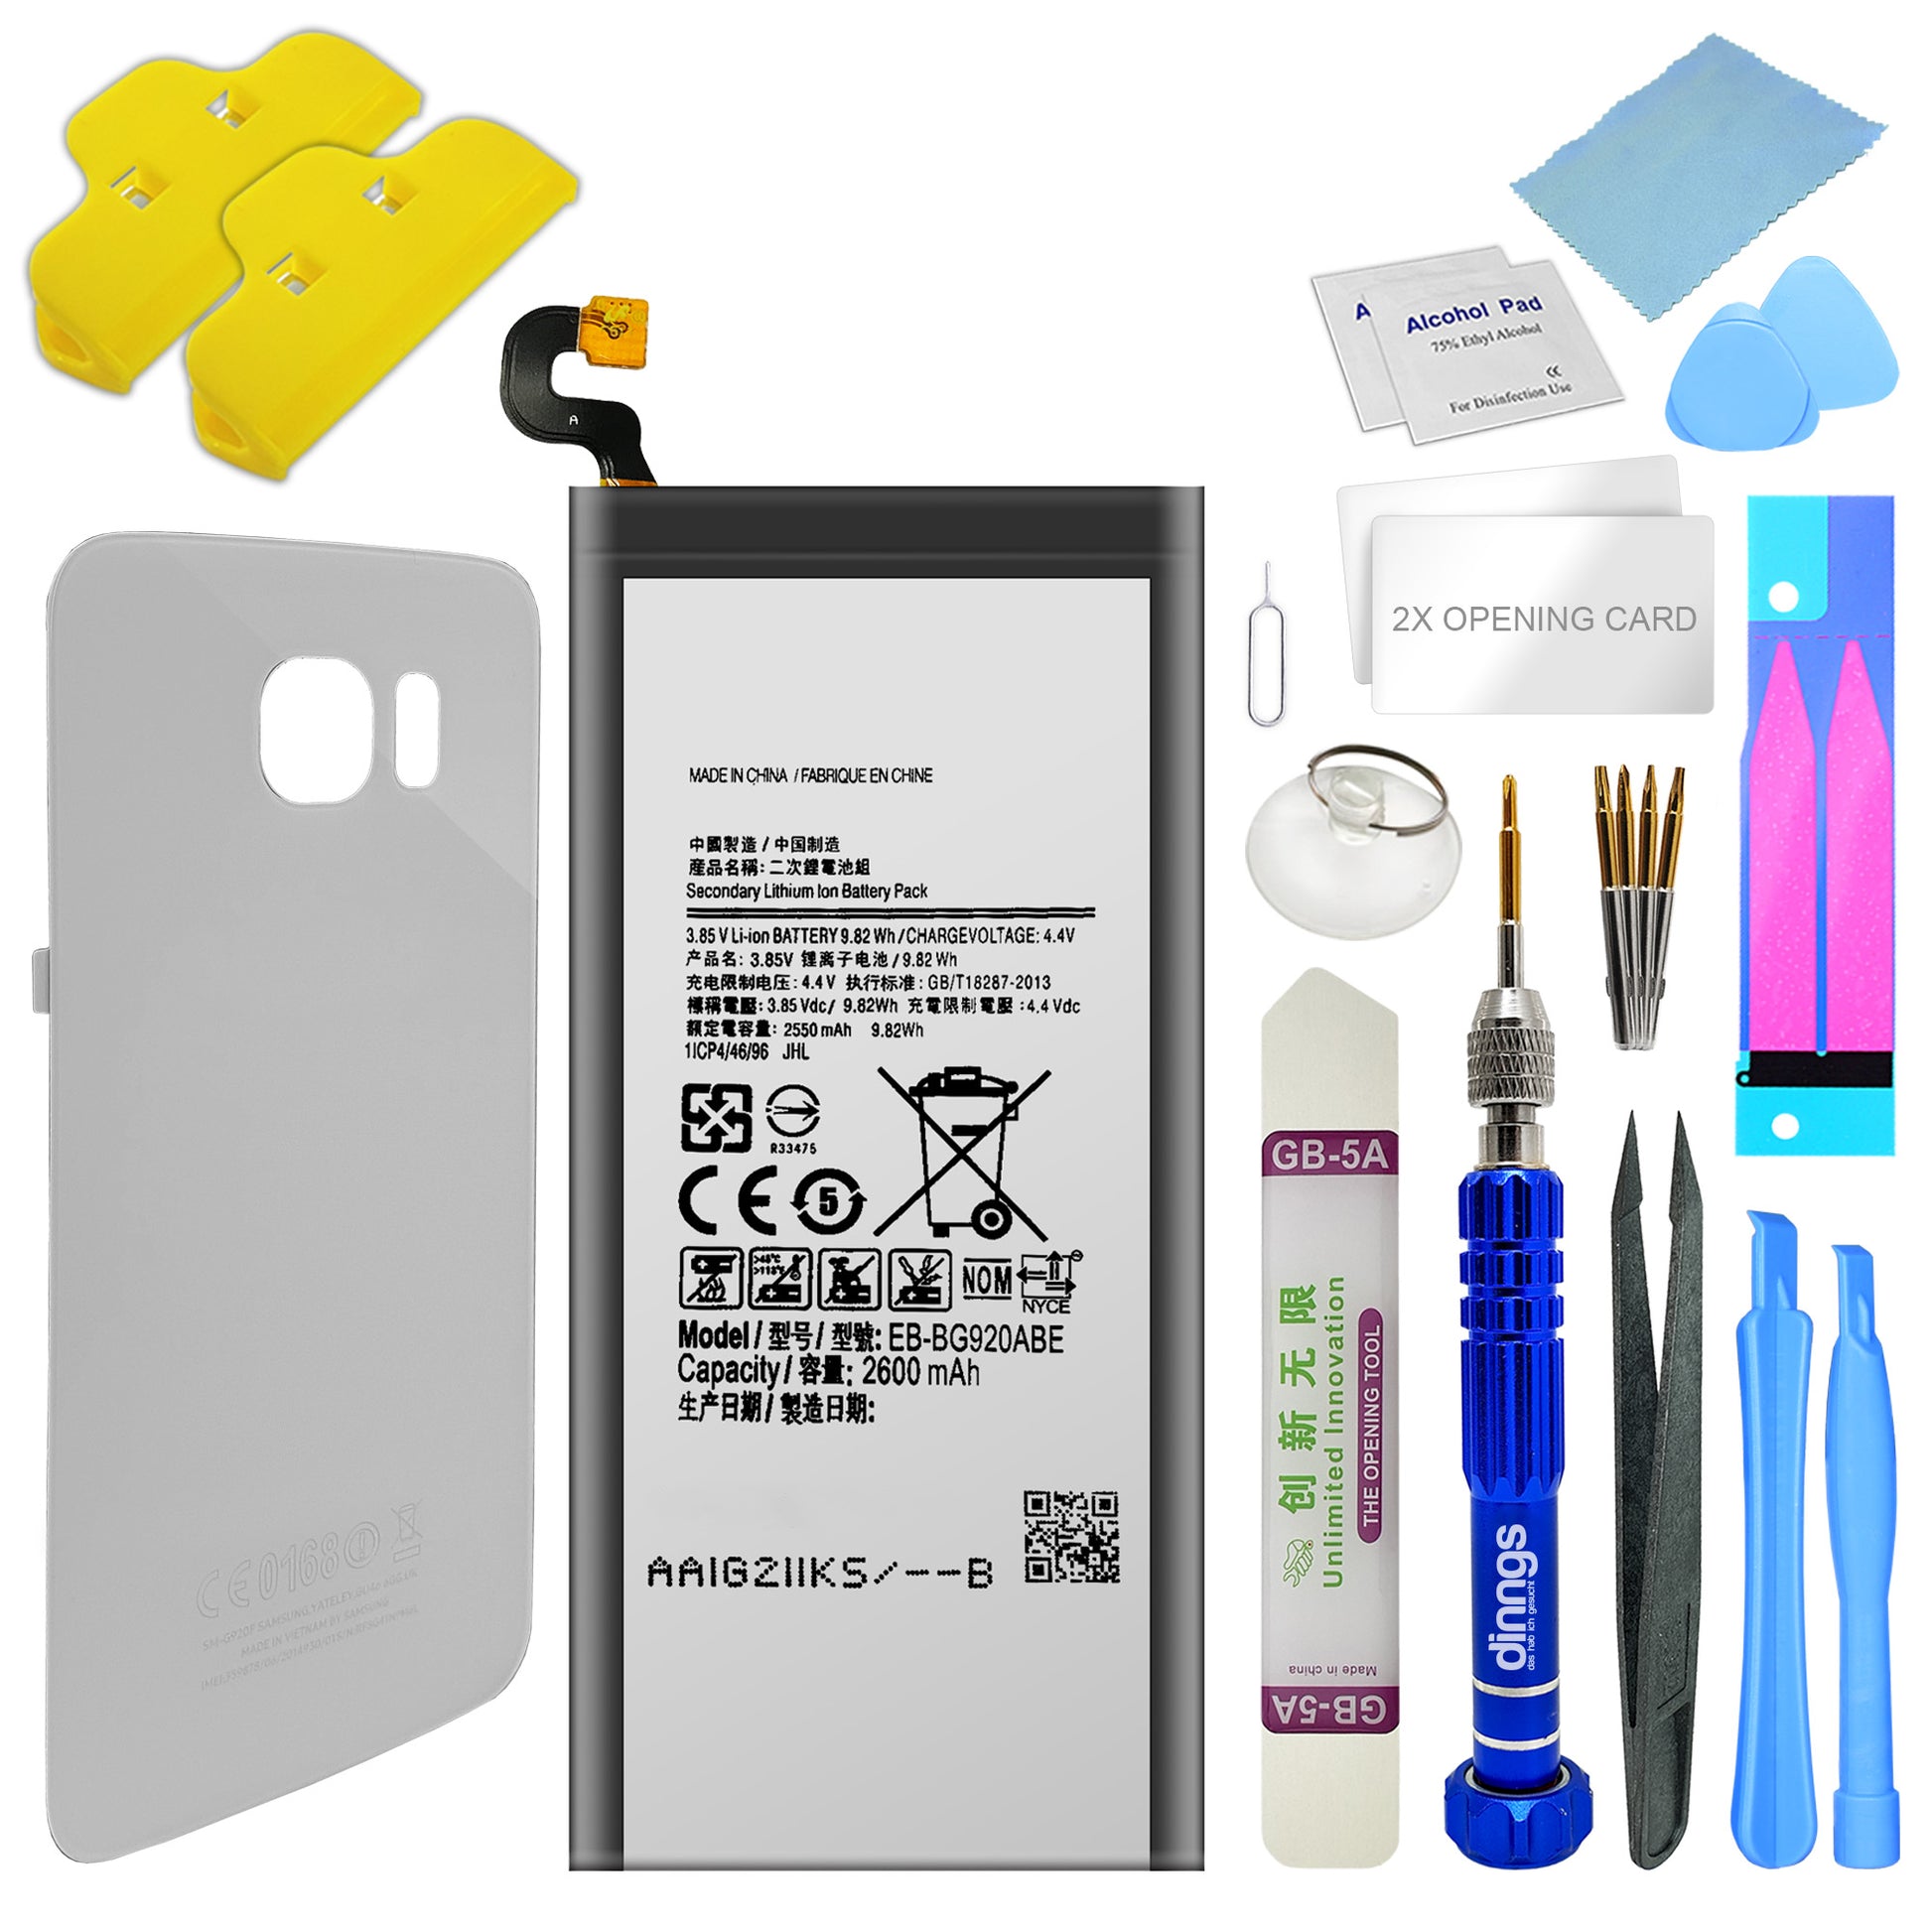 kompatibler Akku für das Samsung Galaxy S6 SM-G920F inklusive Akkudeckel Dark Blue und Werkzeug Set / Umbau Kit, im Dinngs Onlineshop erhältlich.